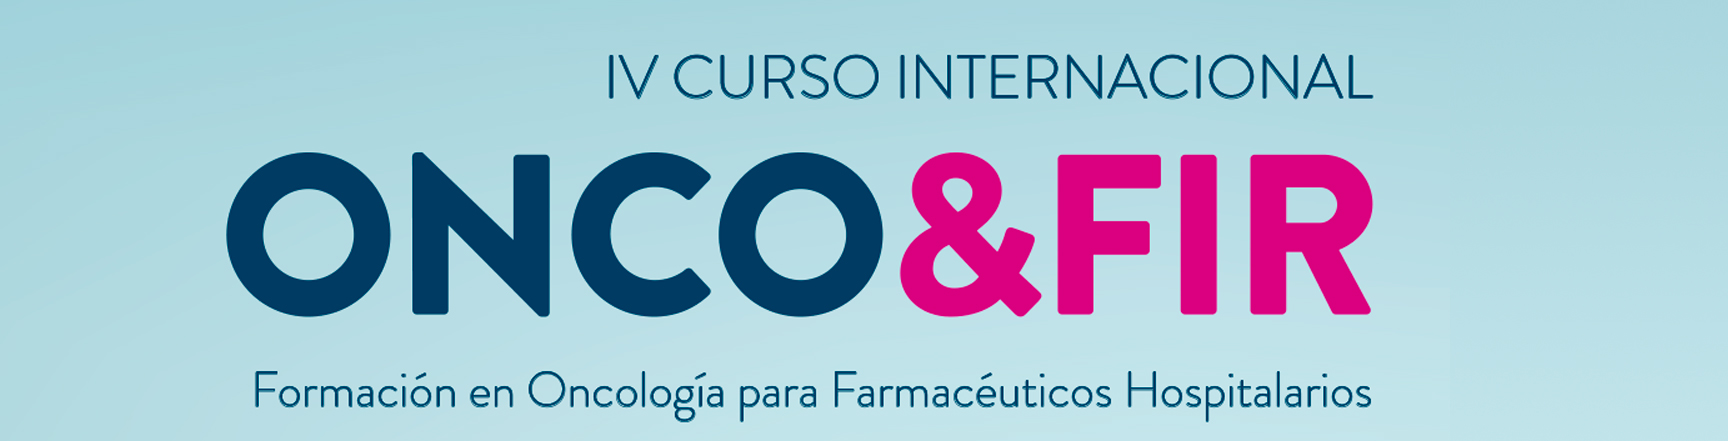 IV CURSO INTERNACIONAL ONCO & FIR